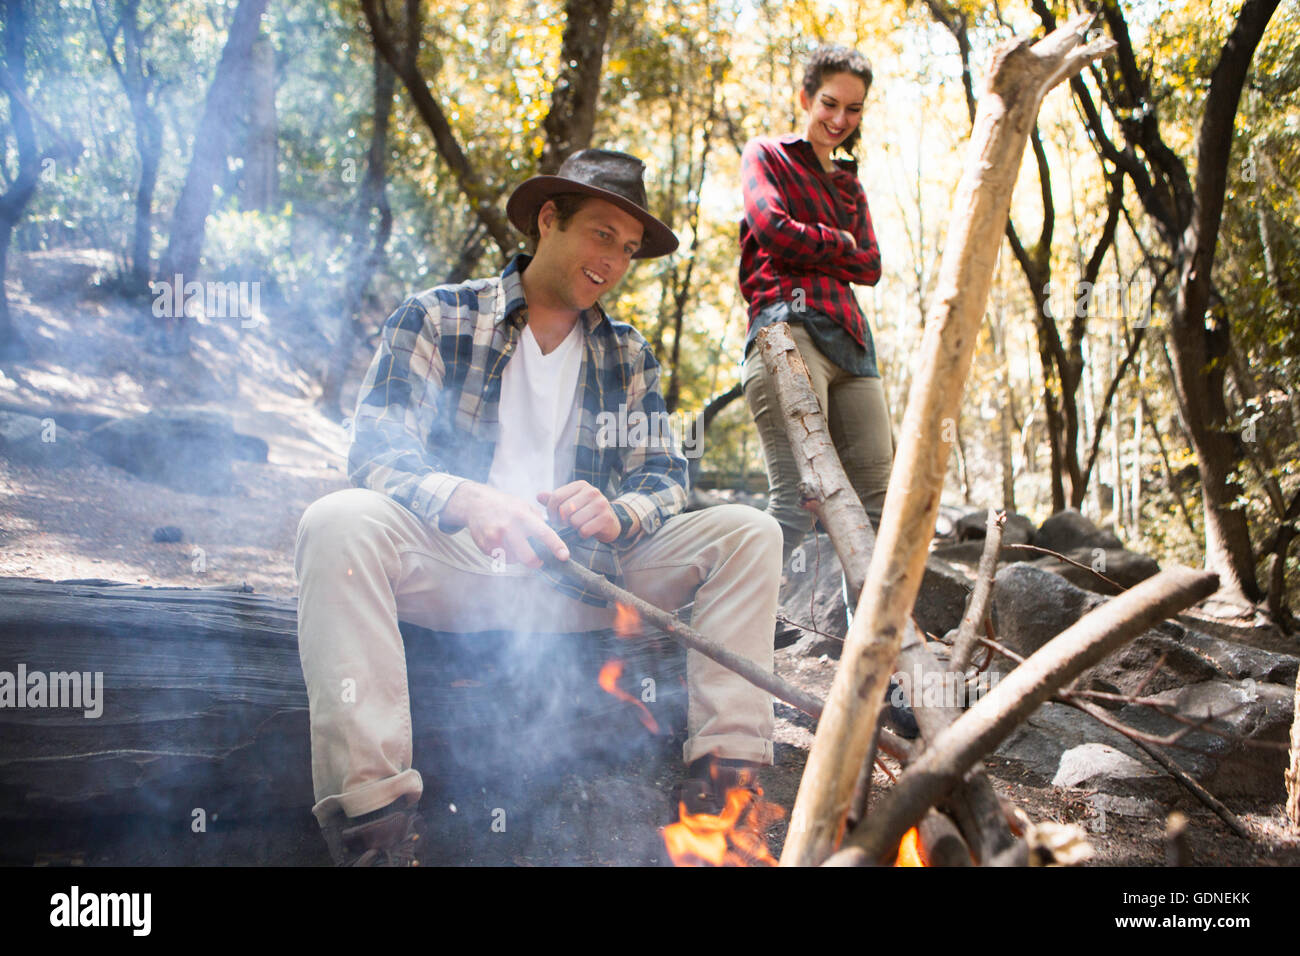 Giovane maschio e femmina escursionisti tendendo il fuoco nella foresta, Arcadia, California, Stati Uniti d'America Foto Stock